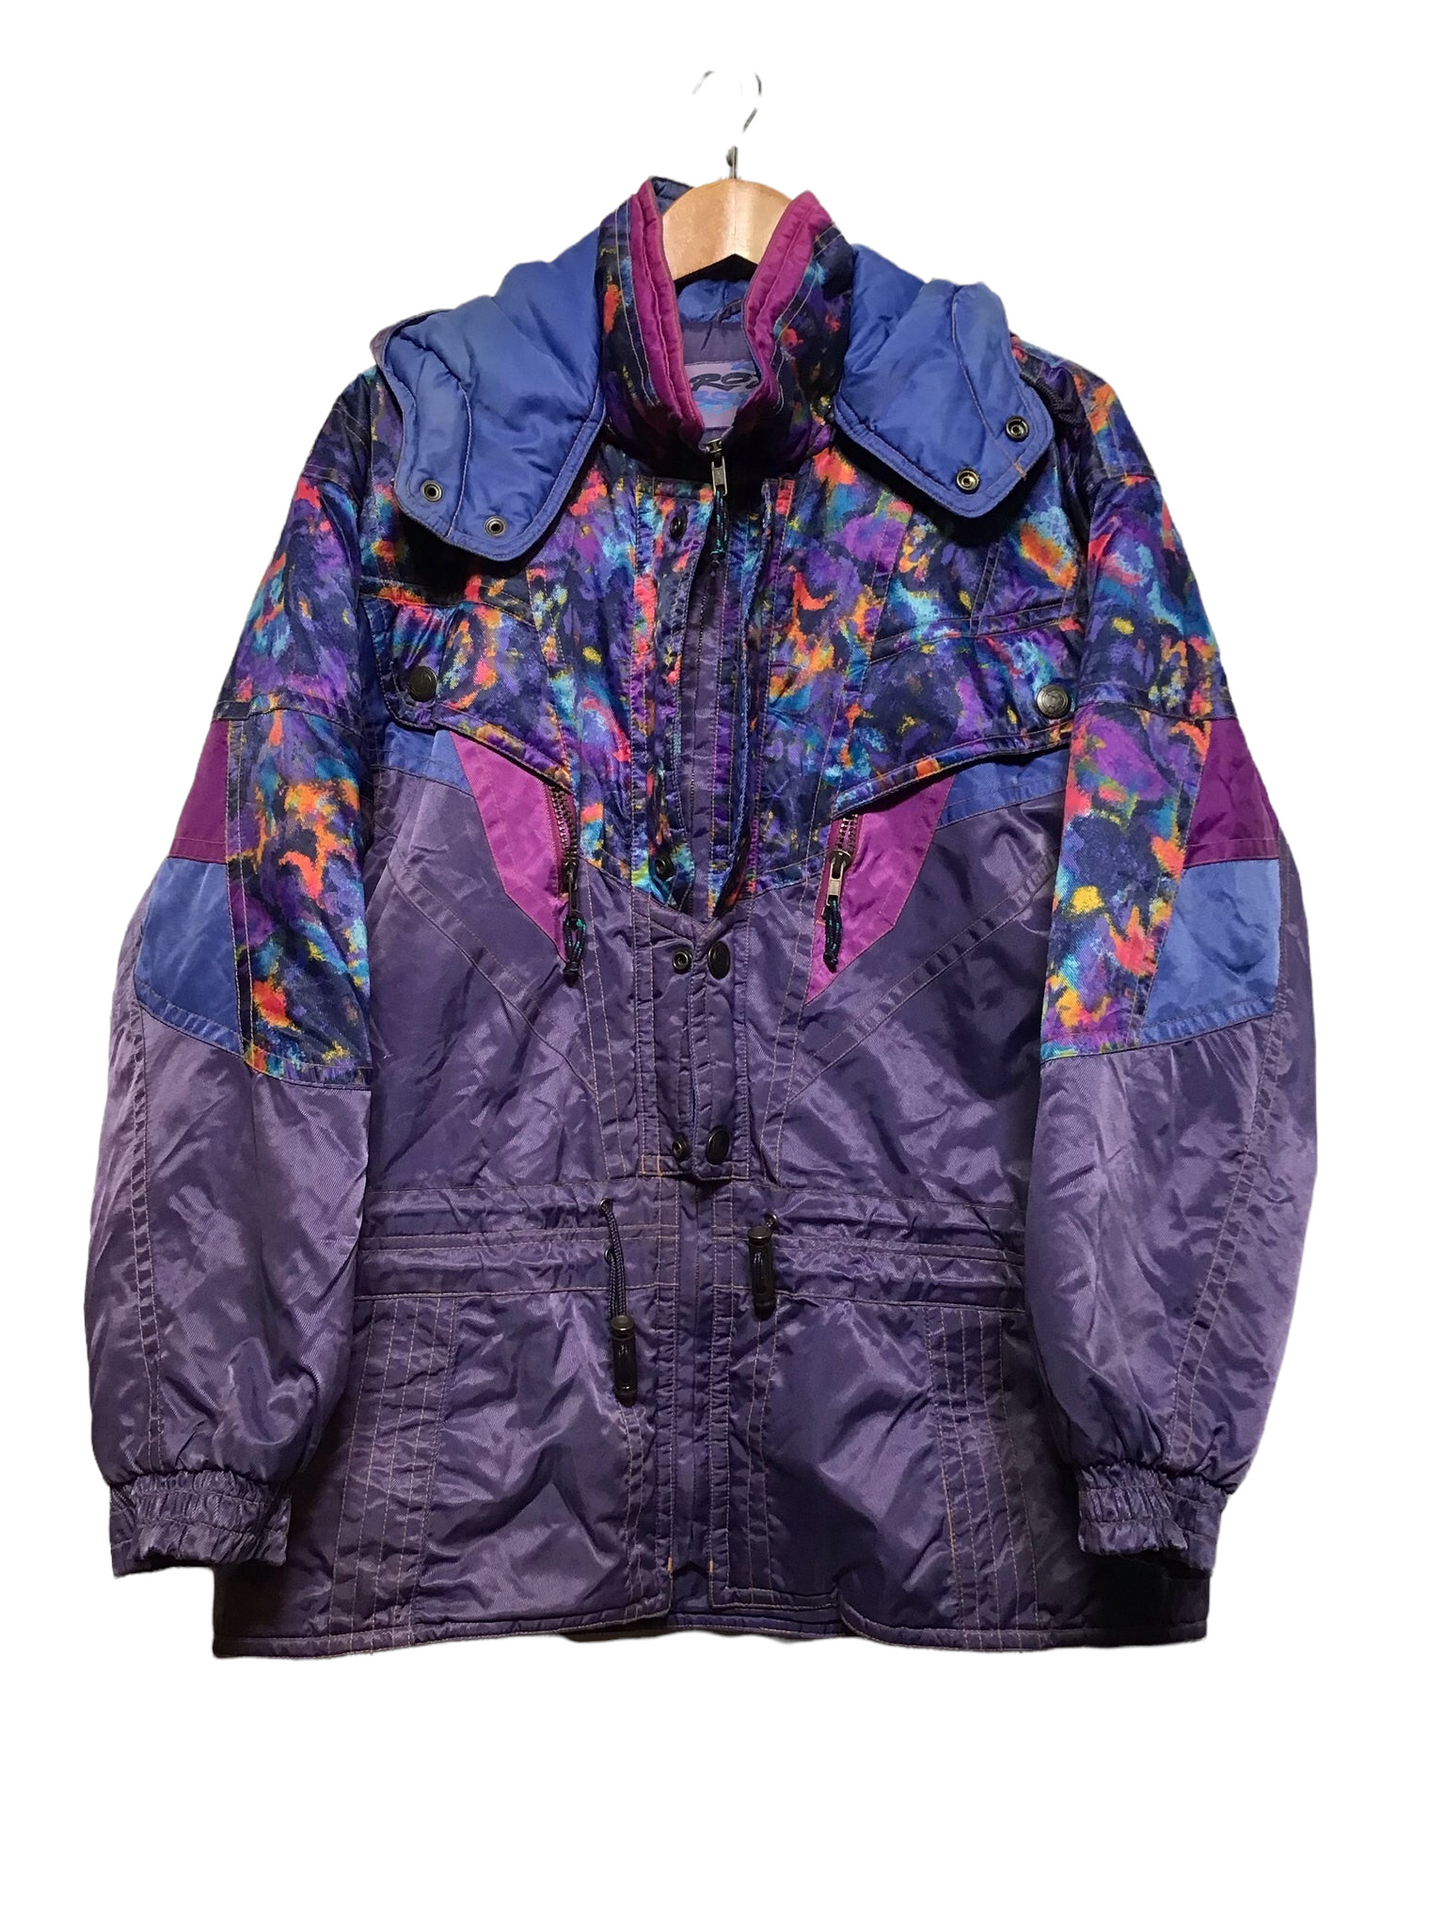 Descent Purple  Ski Jacket (Size L)